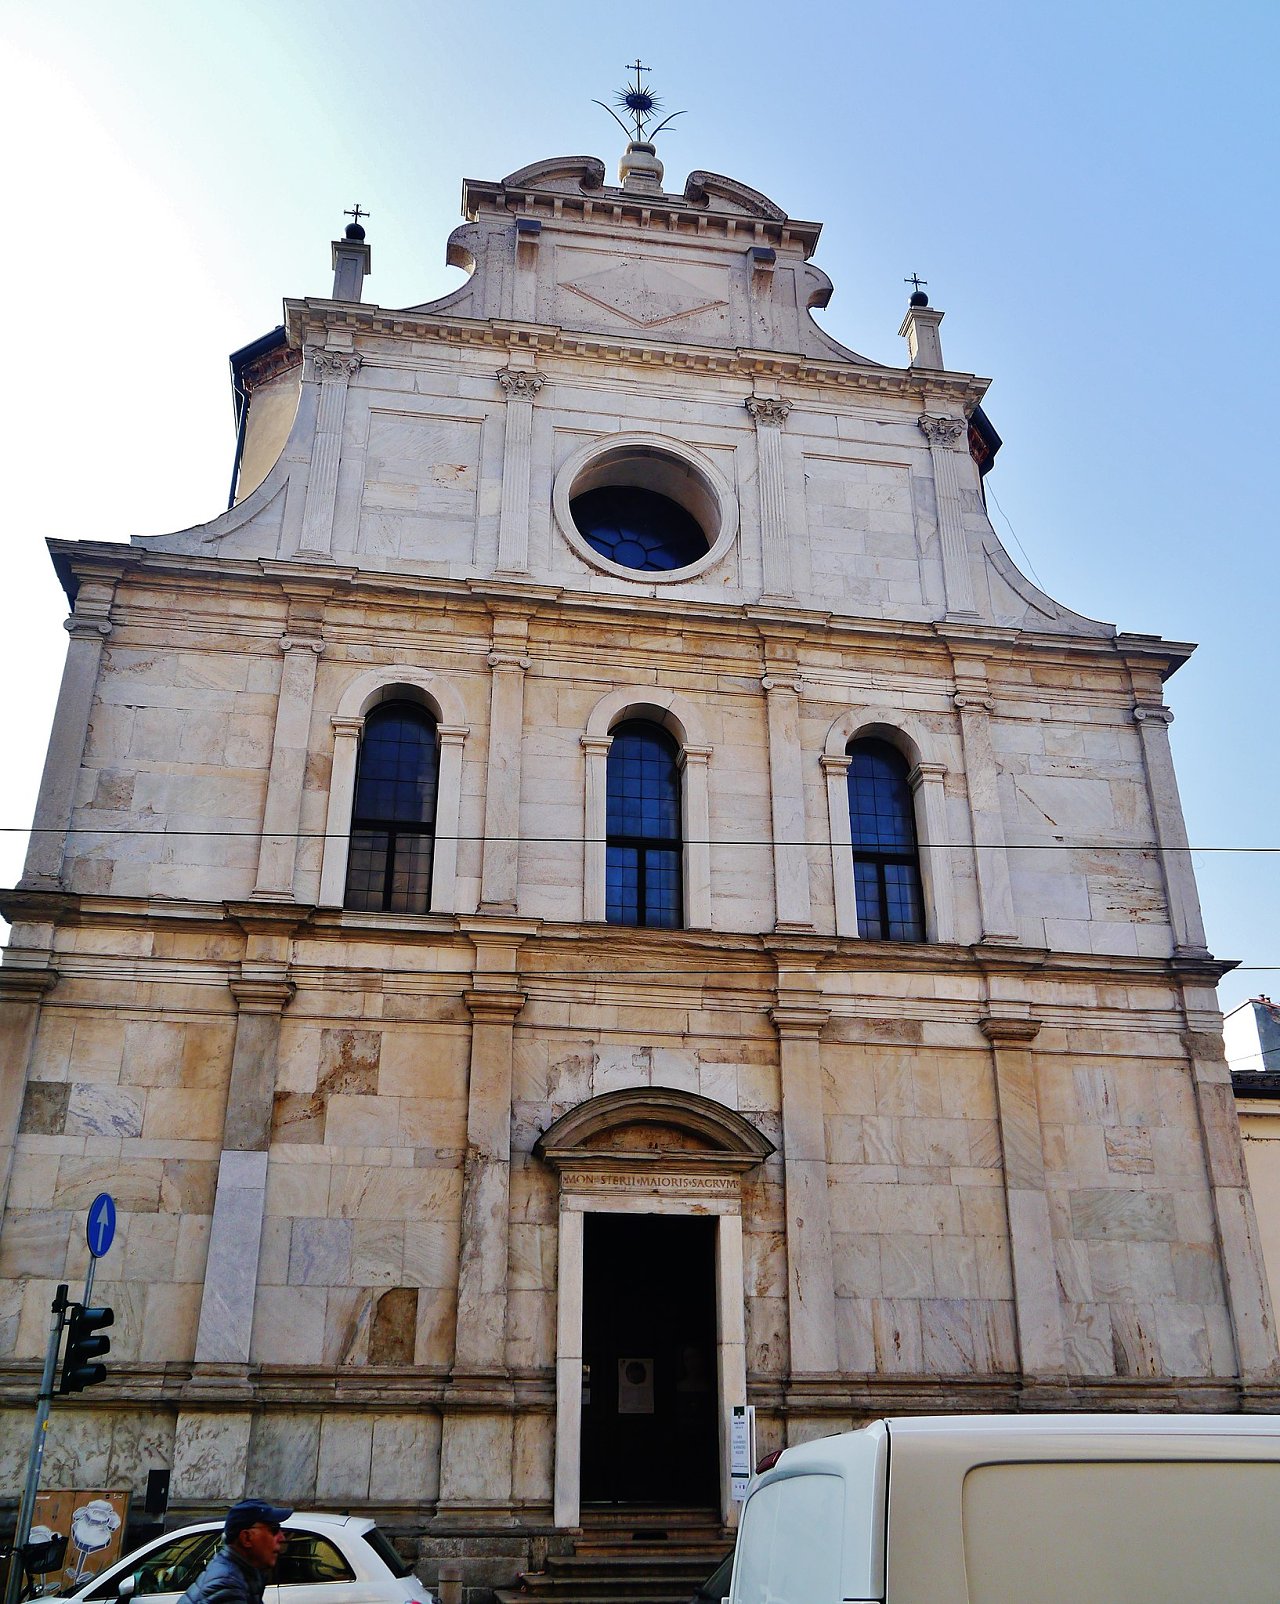 Church of San Maurizio al Monastero Maggiore, Milan, Italy